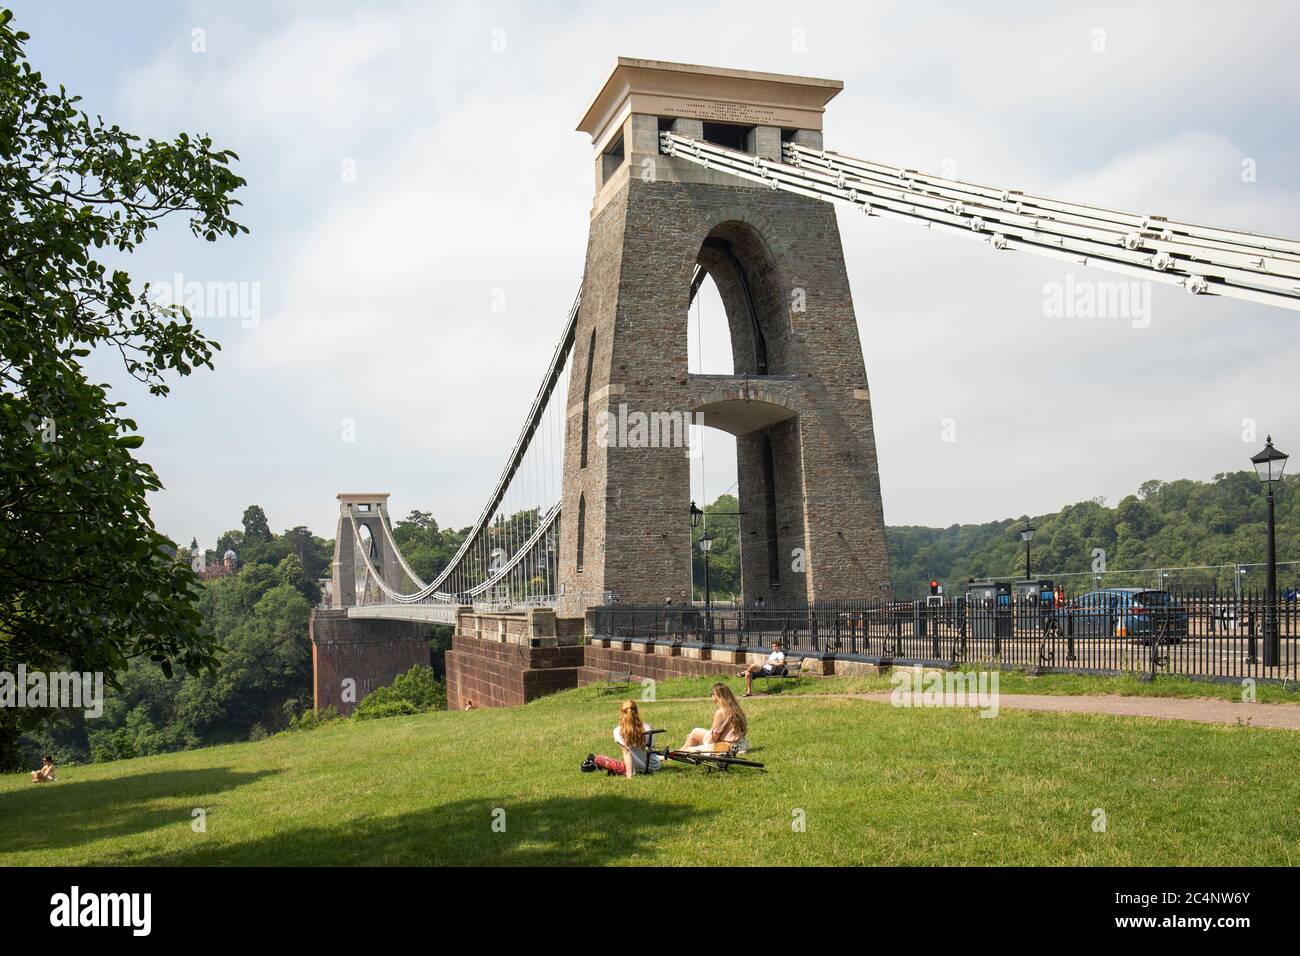 Le célèbre pont suspendu Clifton construit par l'ingénieur victorien Isambard Kingdom Brunel. Un bâtiment emblématique classé de catégorie I à Bristol, Angleterre, Royaume-Uni Banque D'Images